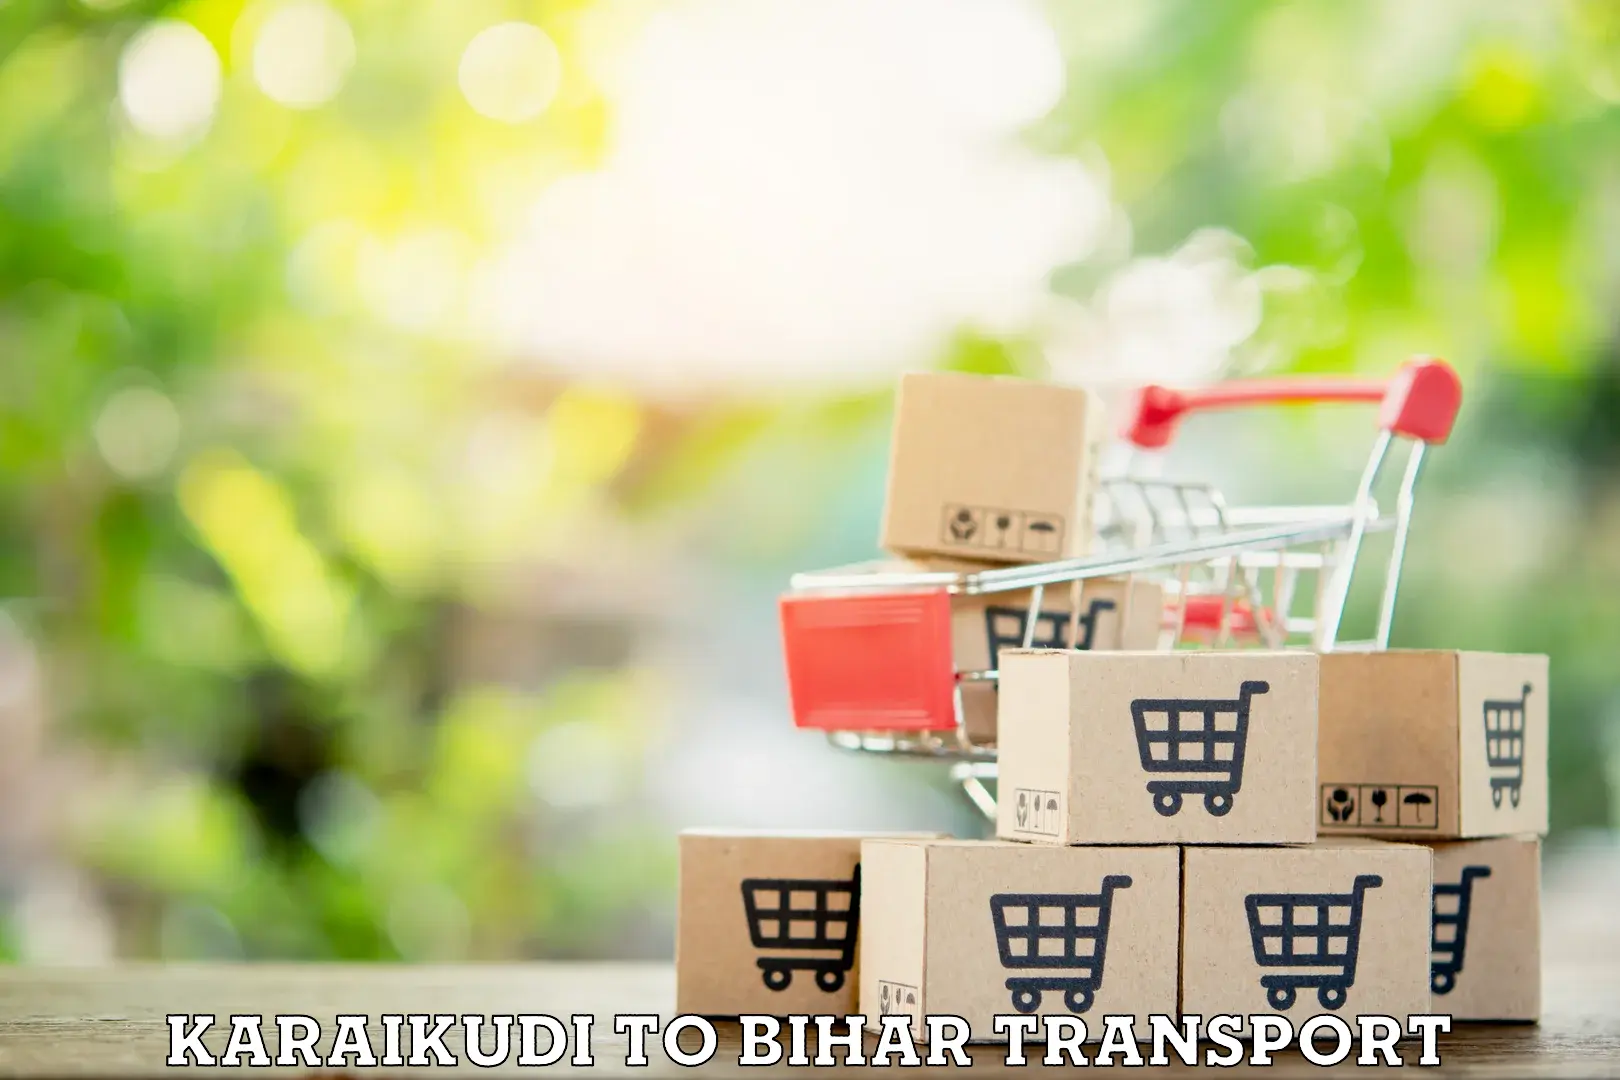 Vehicle transport services Karaikudi to Bhojpur